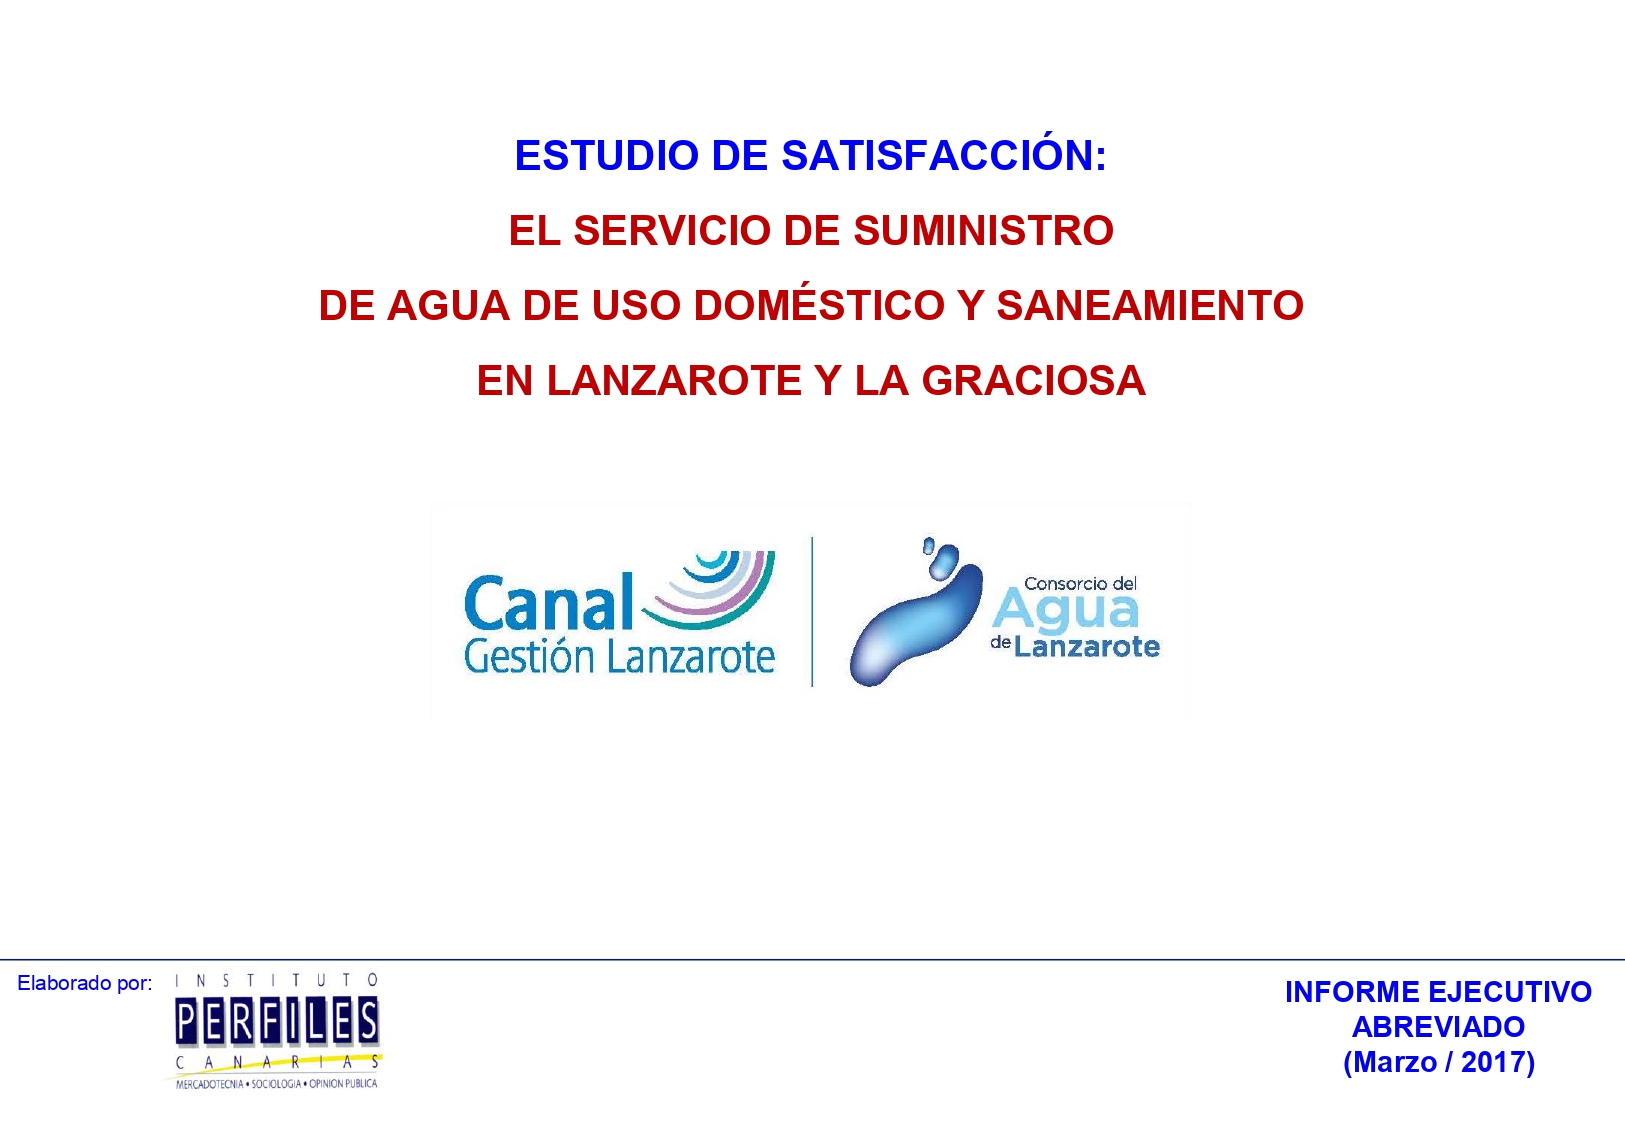 Estudio de satisfacción. El servicio de suministro de agua de uso doméstico y saneamiento en Lanzarote y La Graciosa (2016)